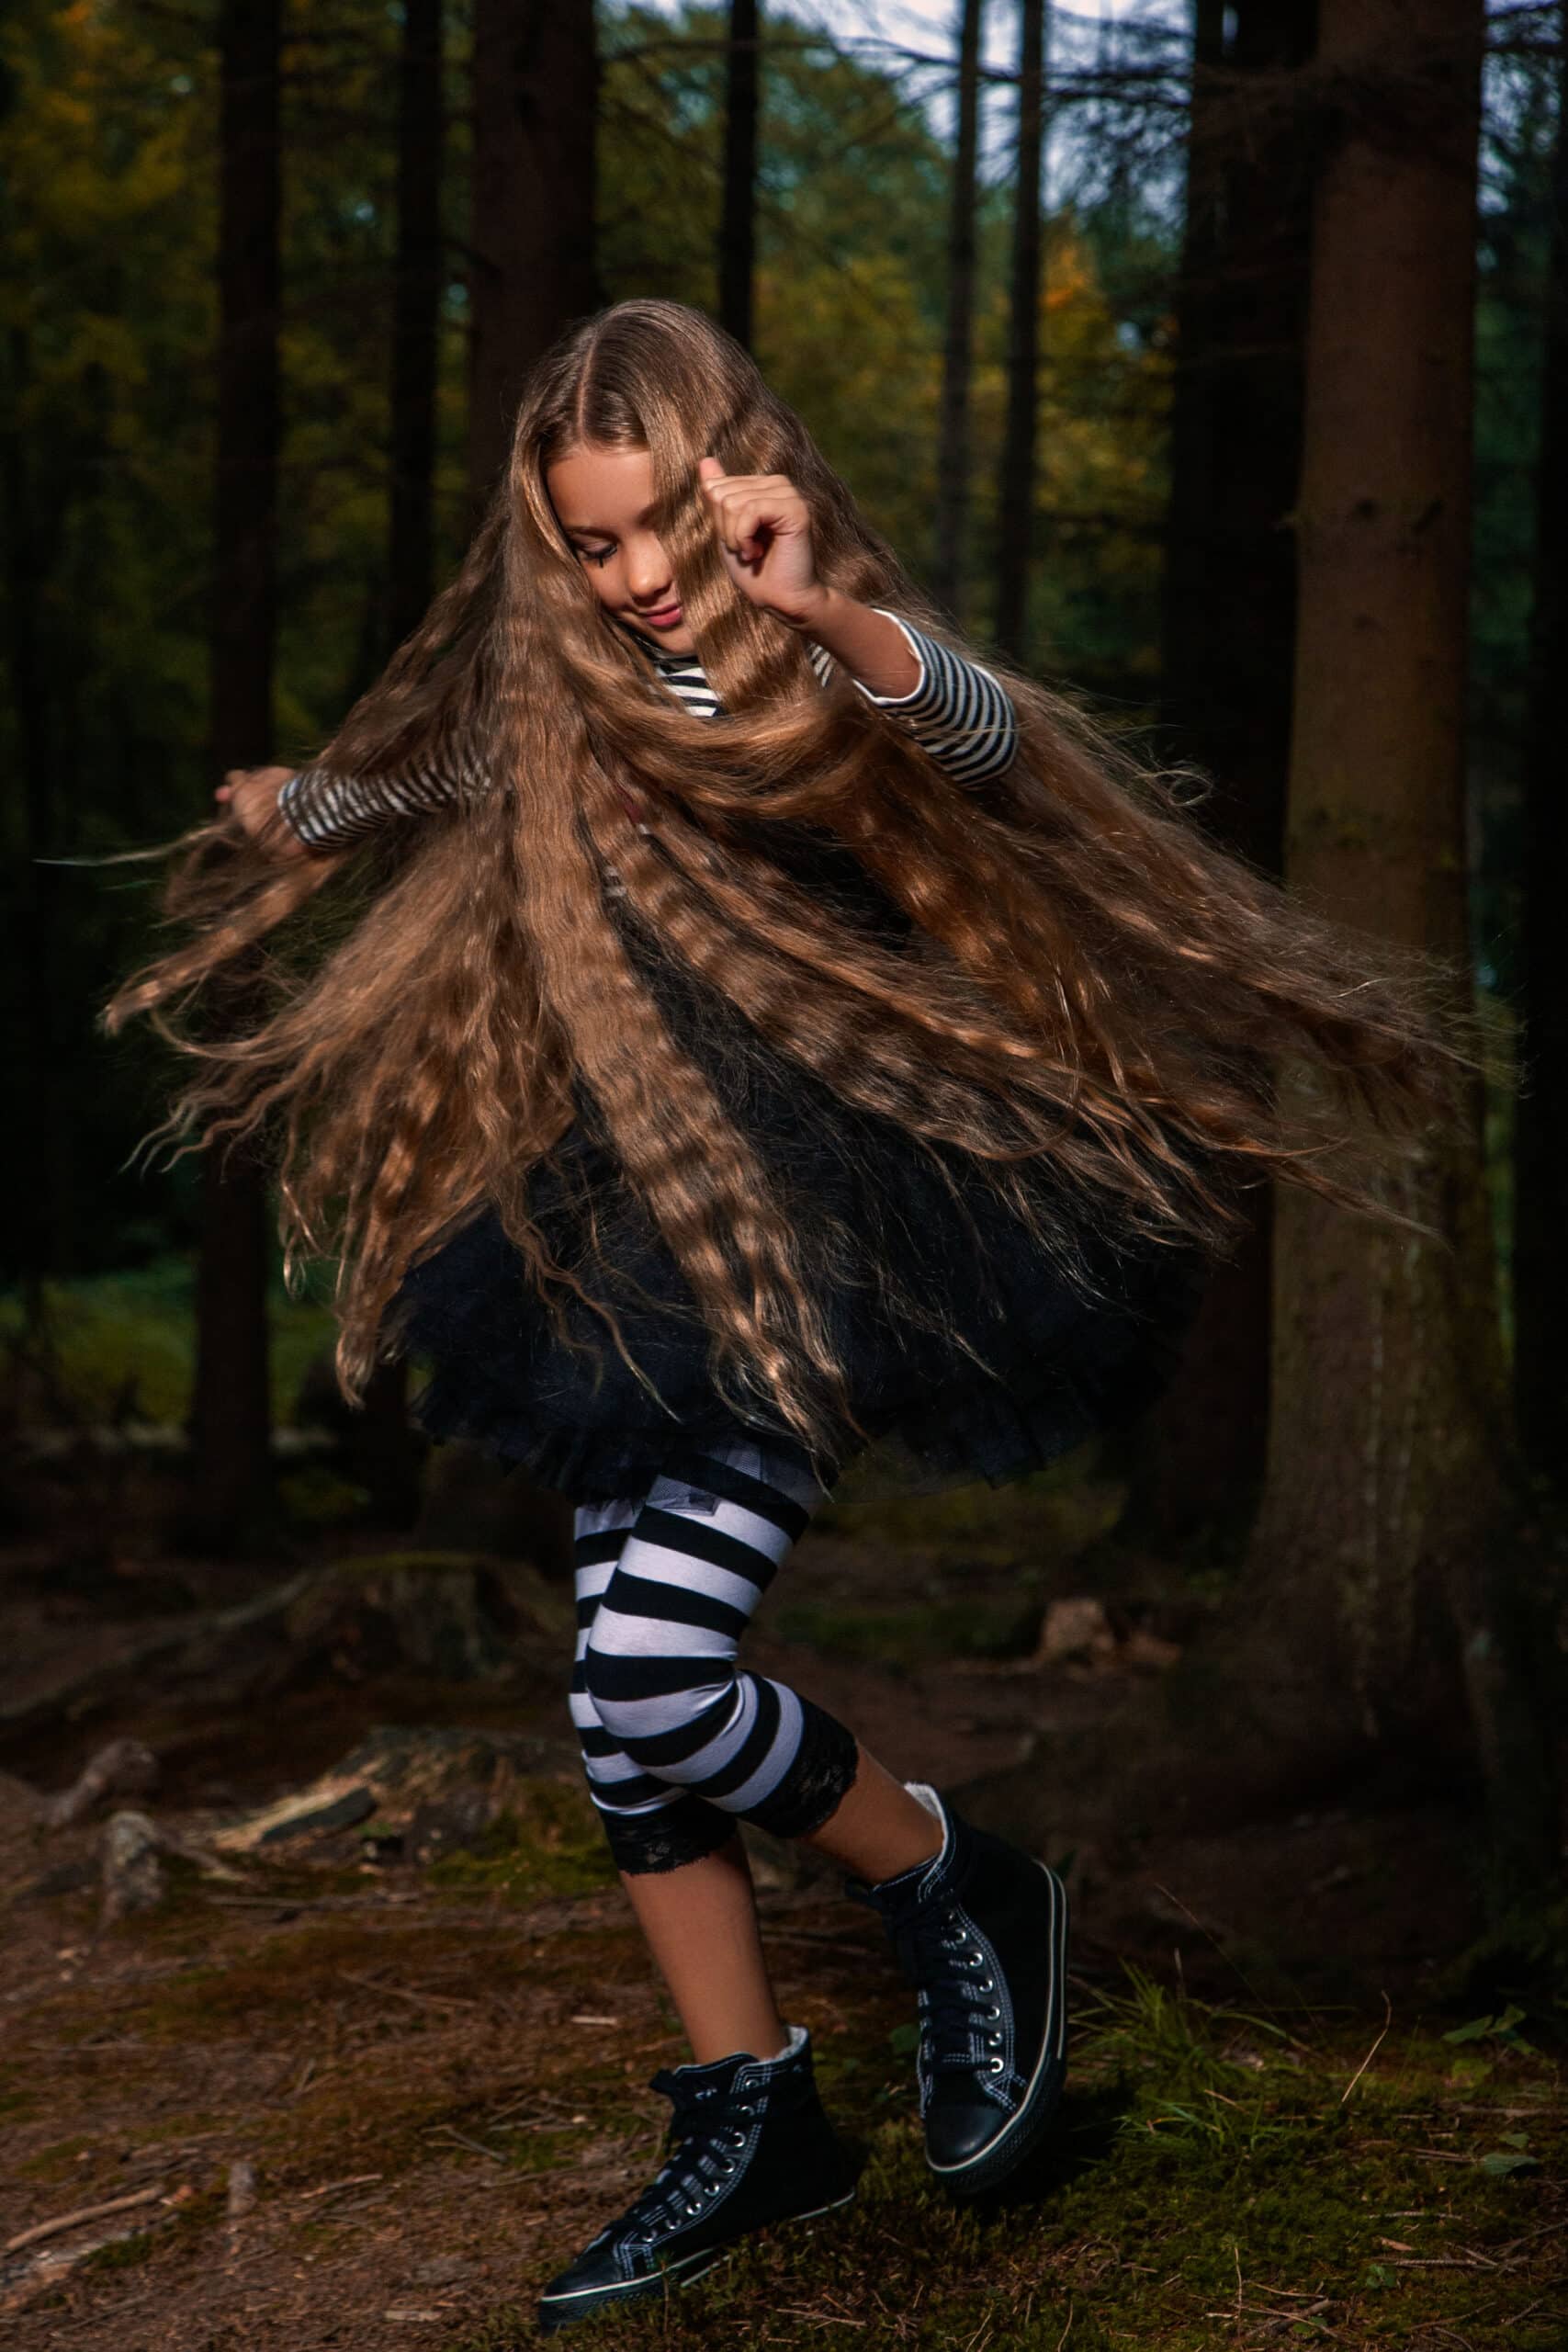 Ein junges Mädchen mit langem, wallendem Haar wirbelt fröhlich in einer Waldkulisse herum. Es trägt ein schwarzes Outfit und gestreifte Leggings. Ihre dynamische Bewegung betont ihr fächerartig ausgebreitetes Haar. © Fotografie Tomas Rodriguez